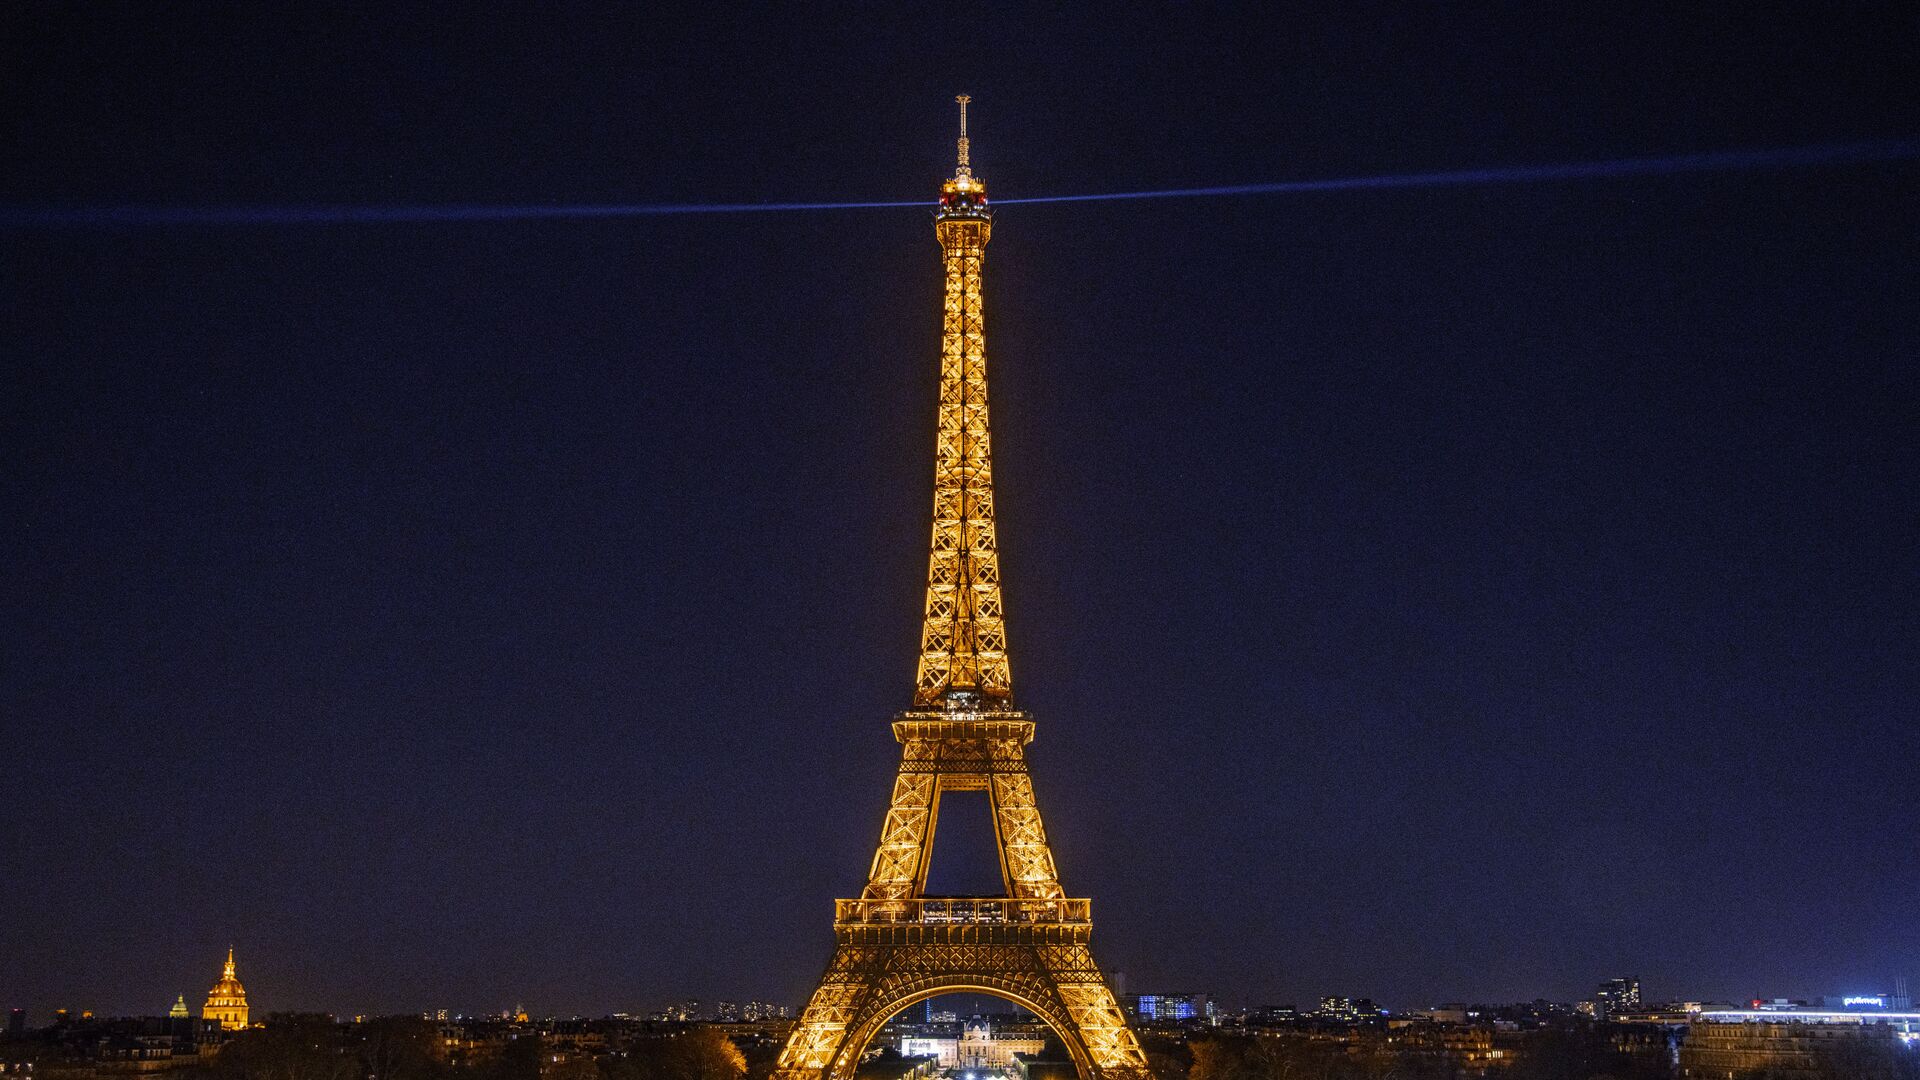 Эйфелева башня в Париже с включенной подсветкой - Sputnik Азербайджан, 1920, 11.09.2022